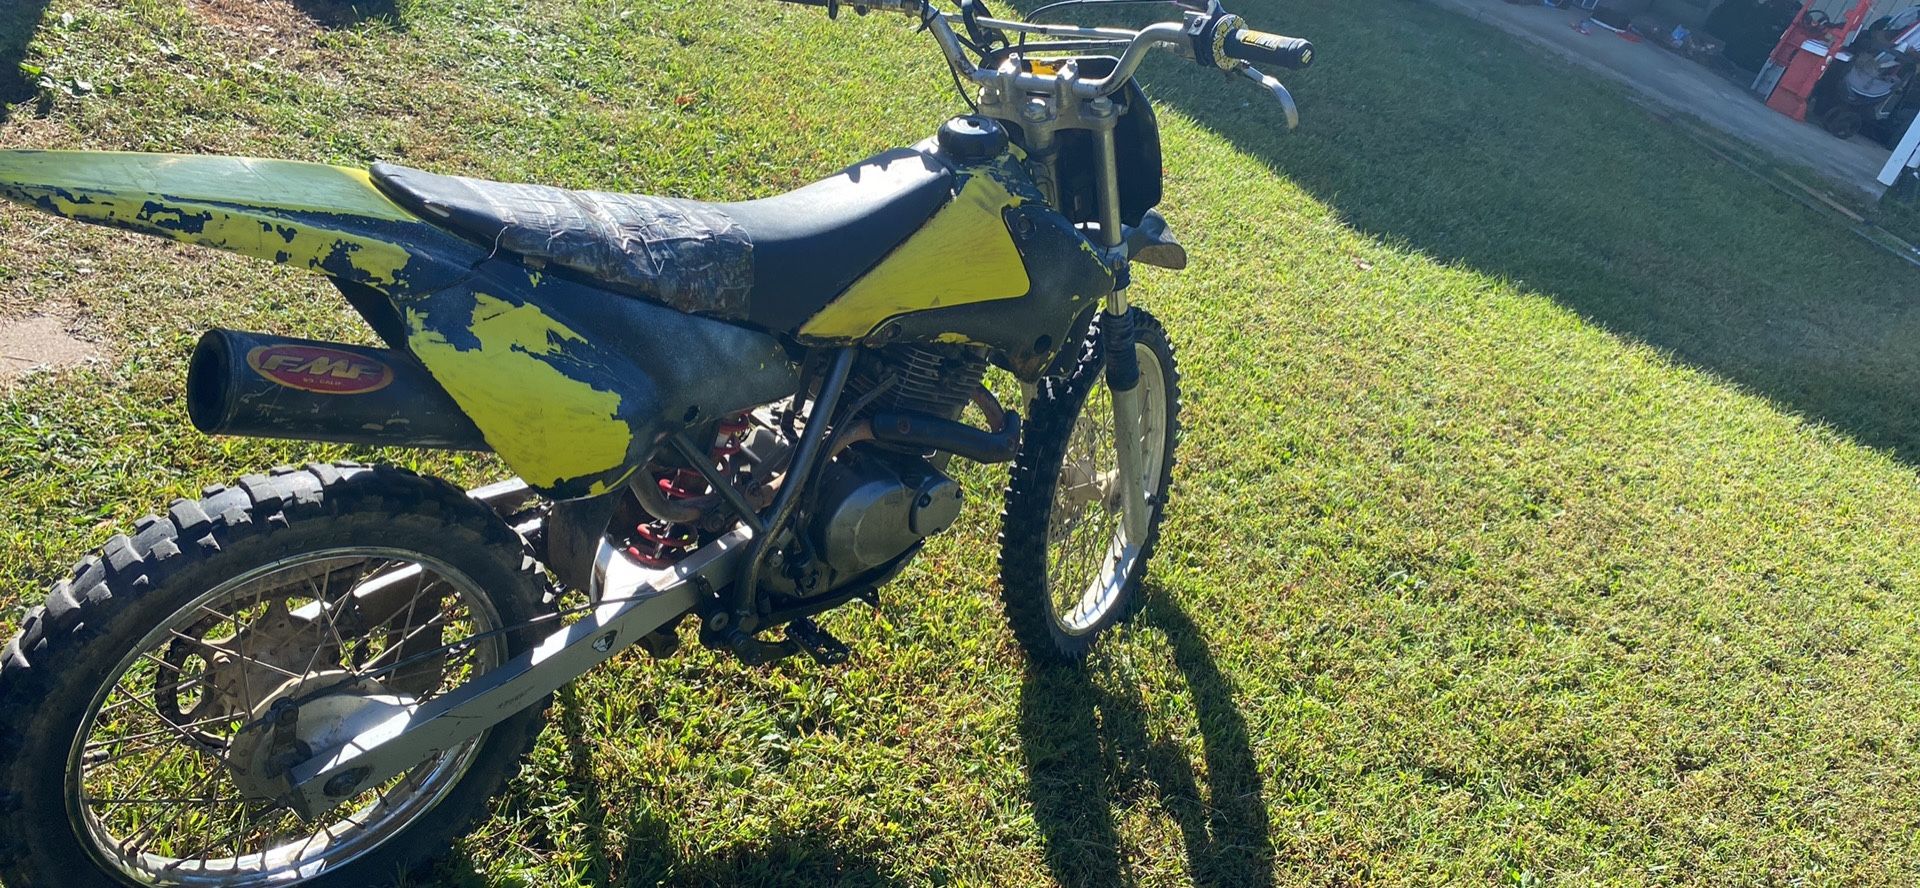 Dirt Bike 125cc